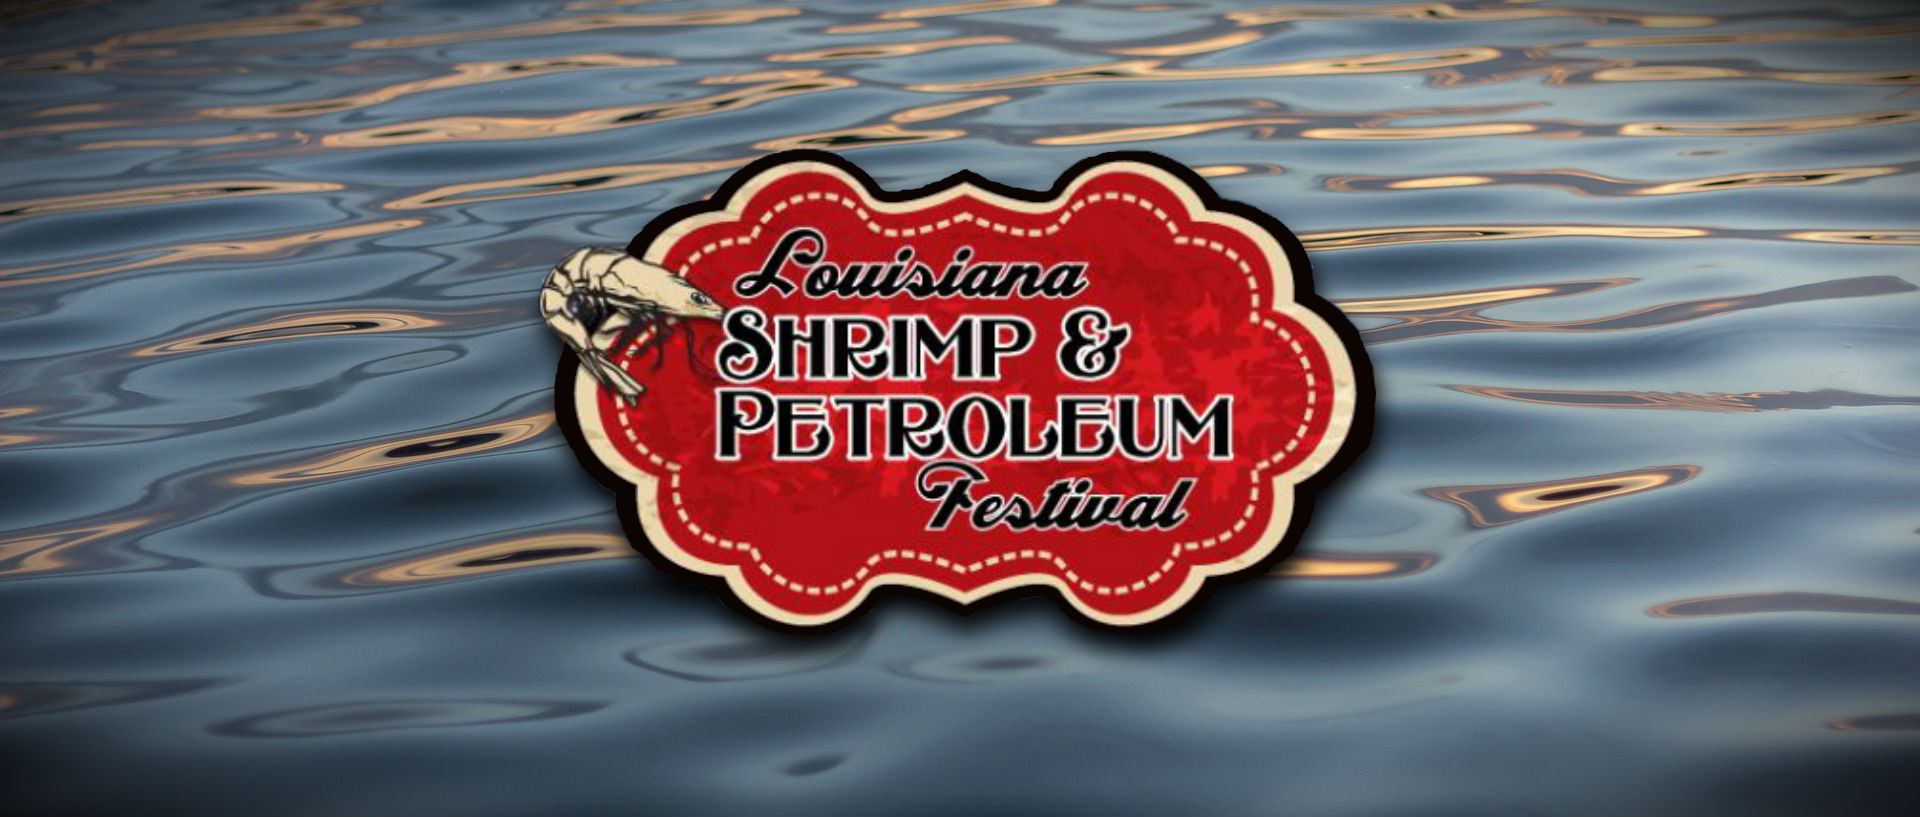 shrimp & petroleum festival, shrimp and petroleum festival, Louisiana